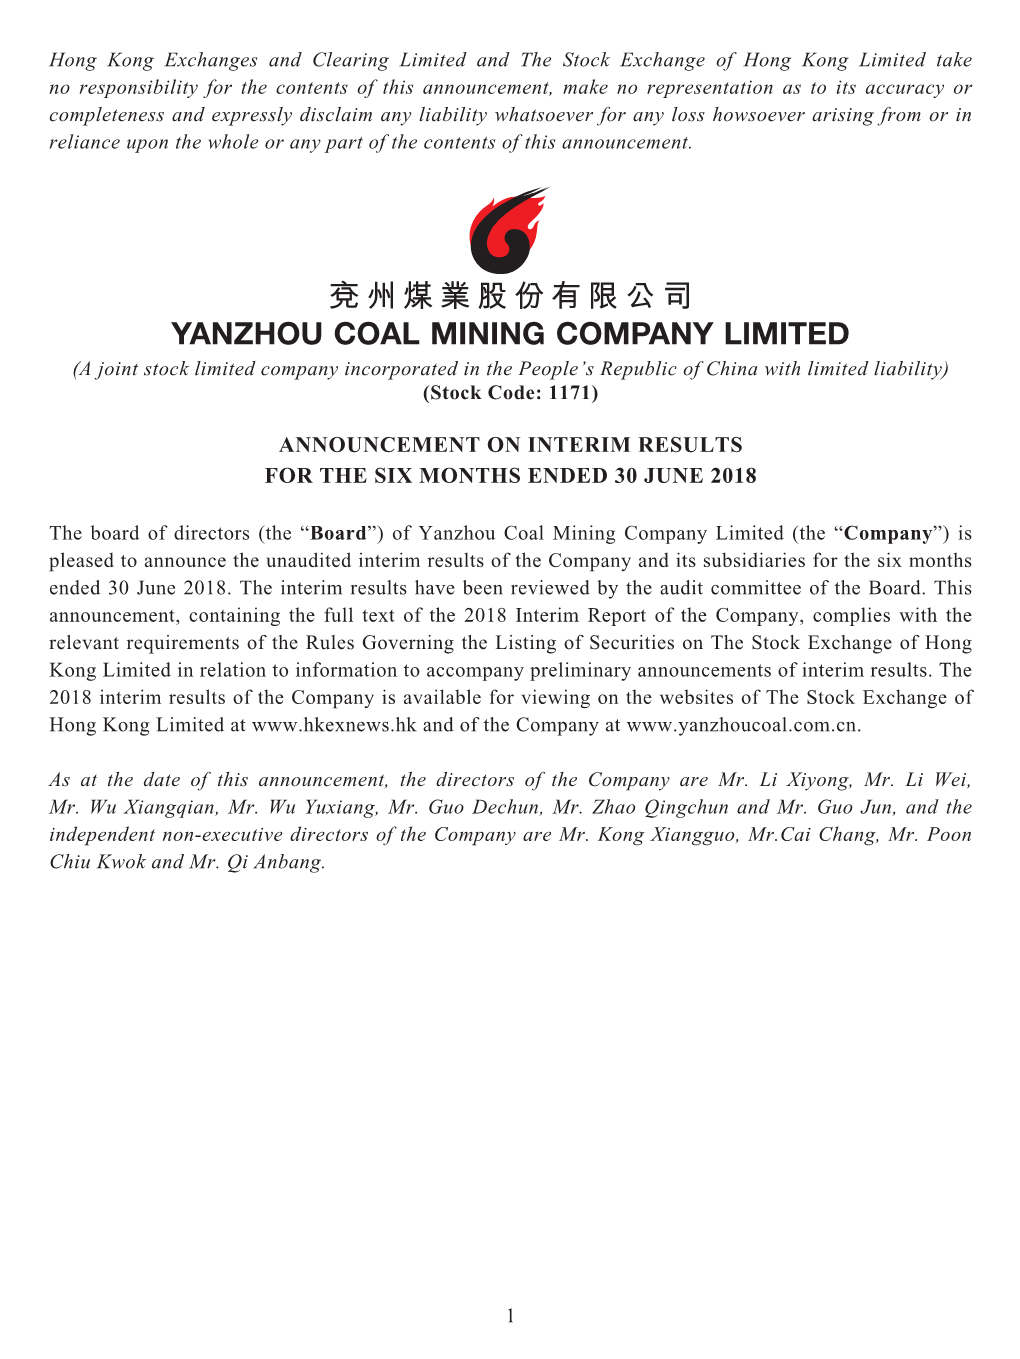 兗州煤業股份有限公司 Yanzhou Coal